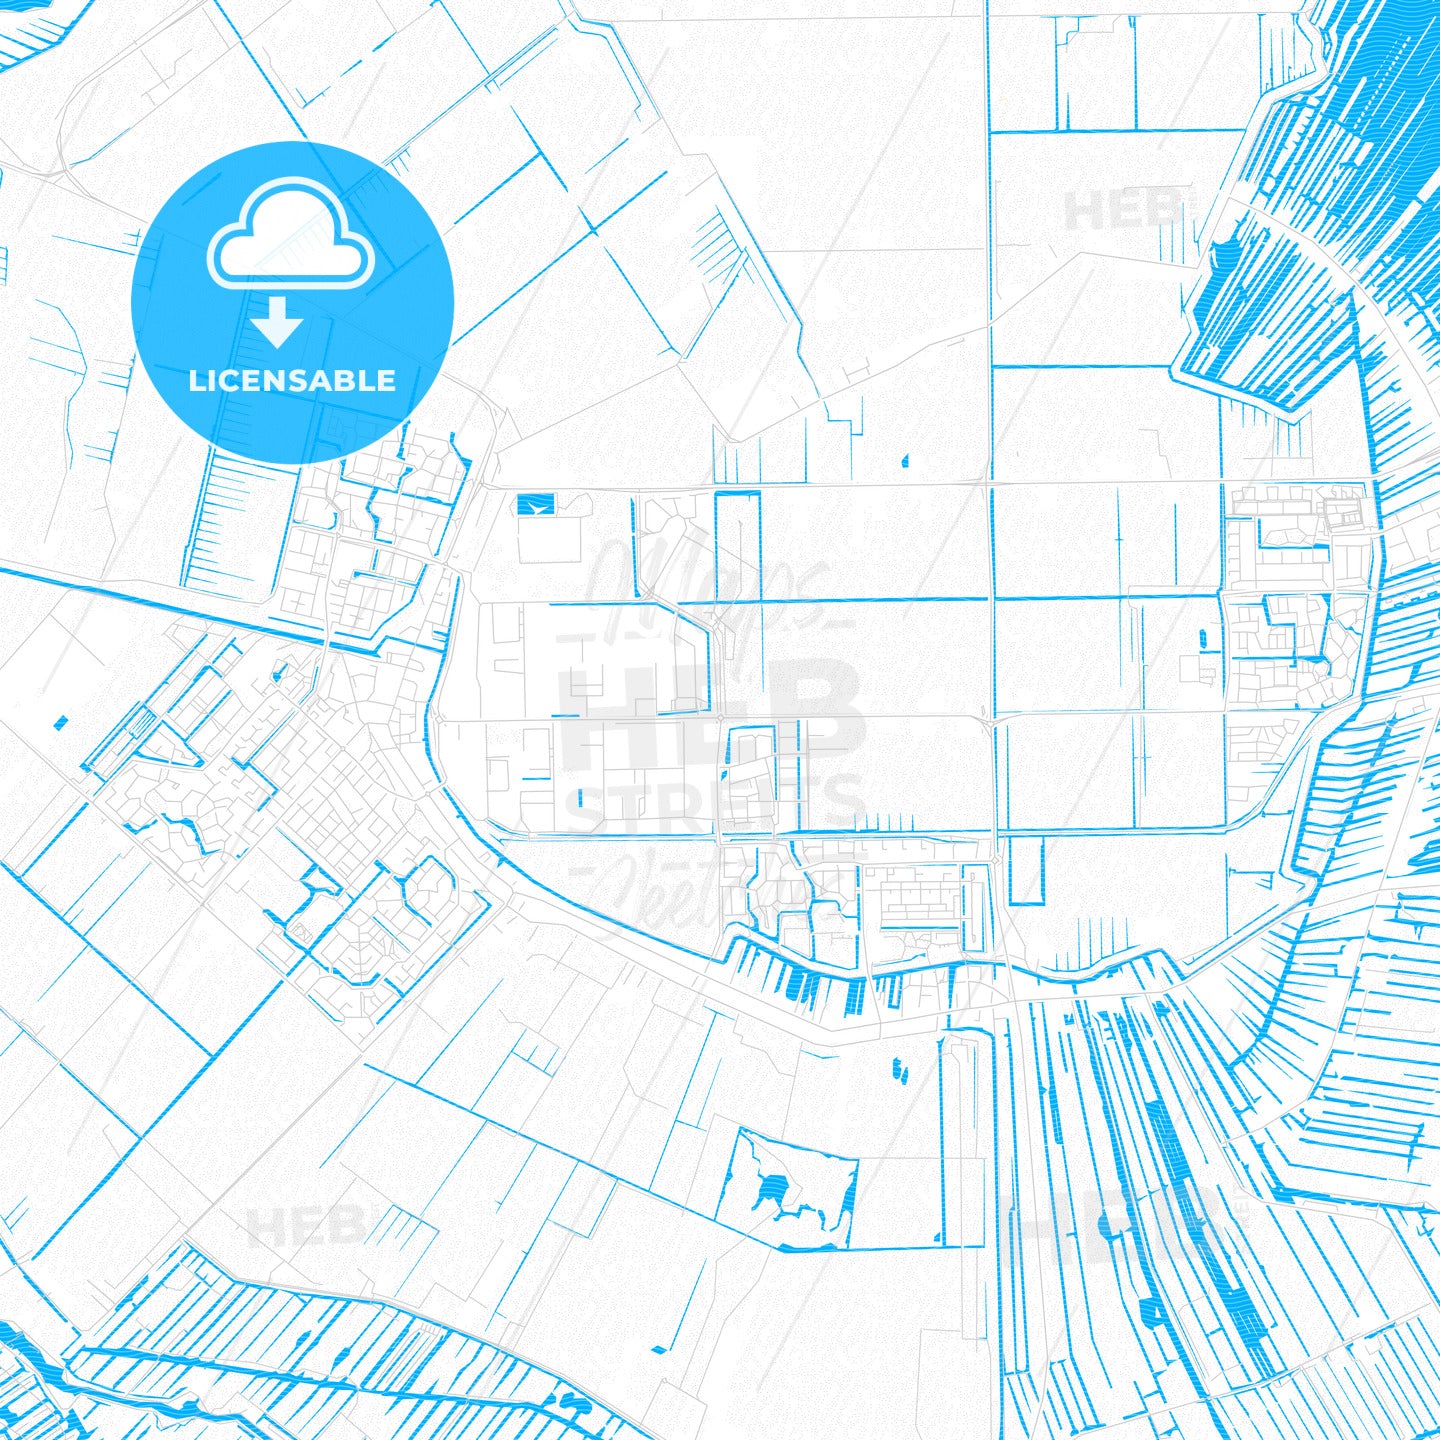 De Ronde Venen, Netherlands PDF vector map with water in focus